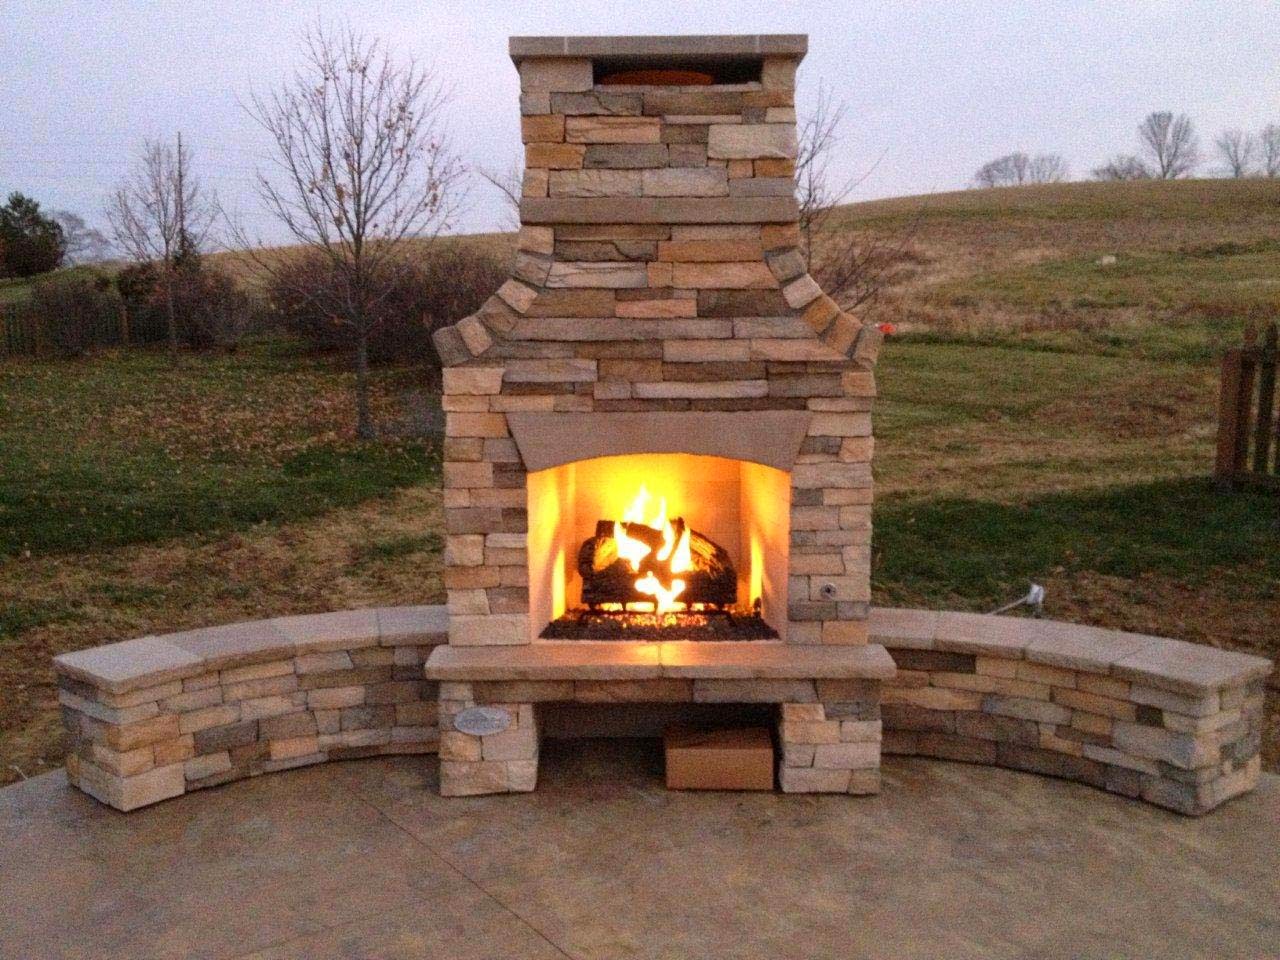 Outdoor Living: Fireplaces Fireplaces Fireplaces!!!!